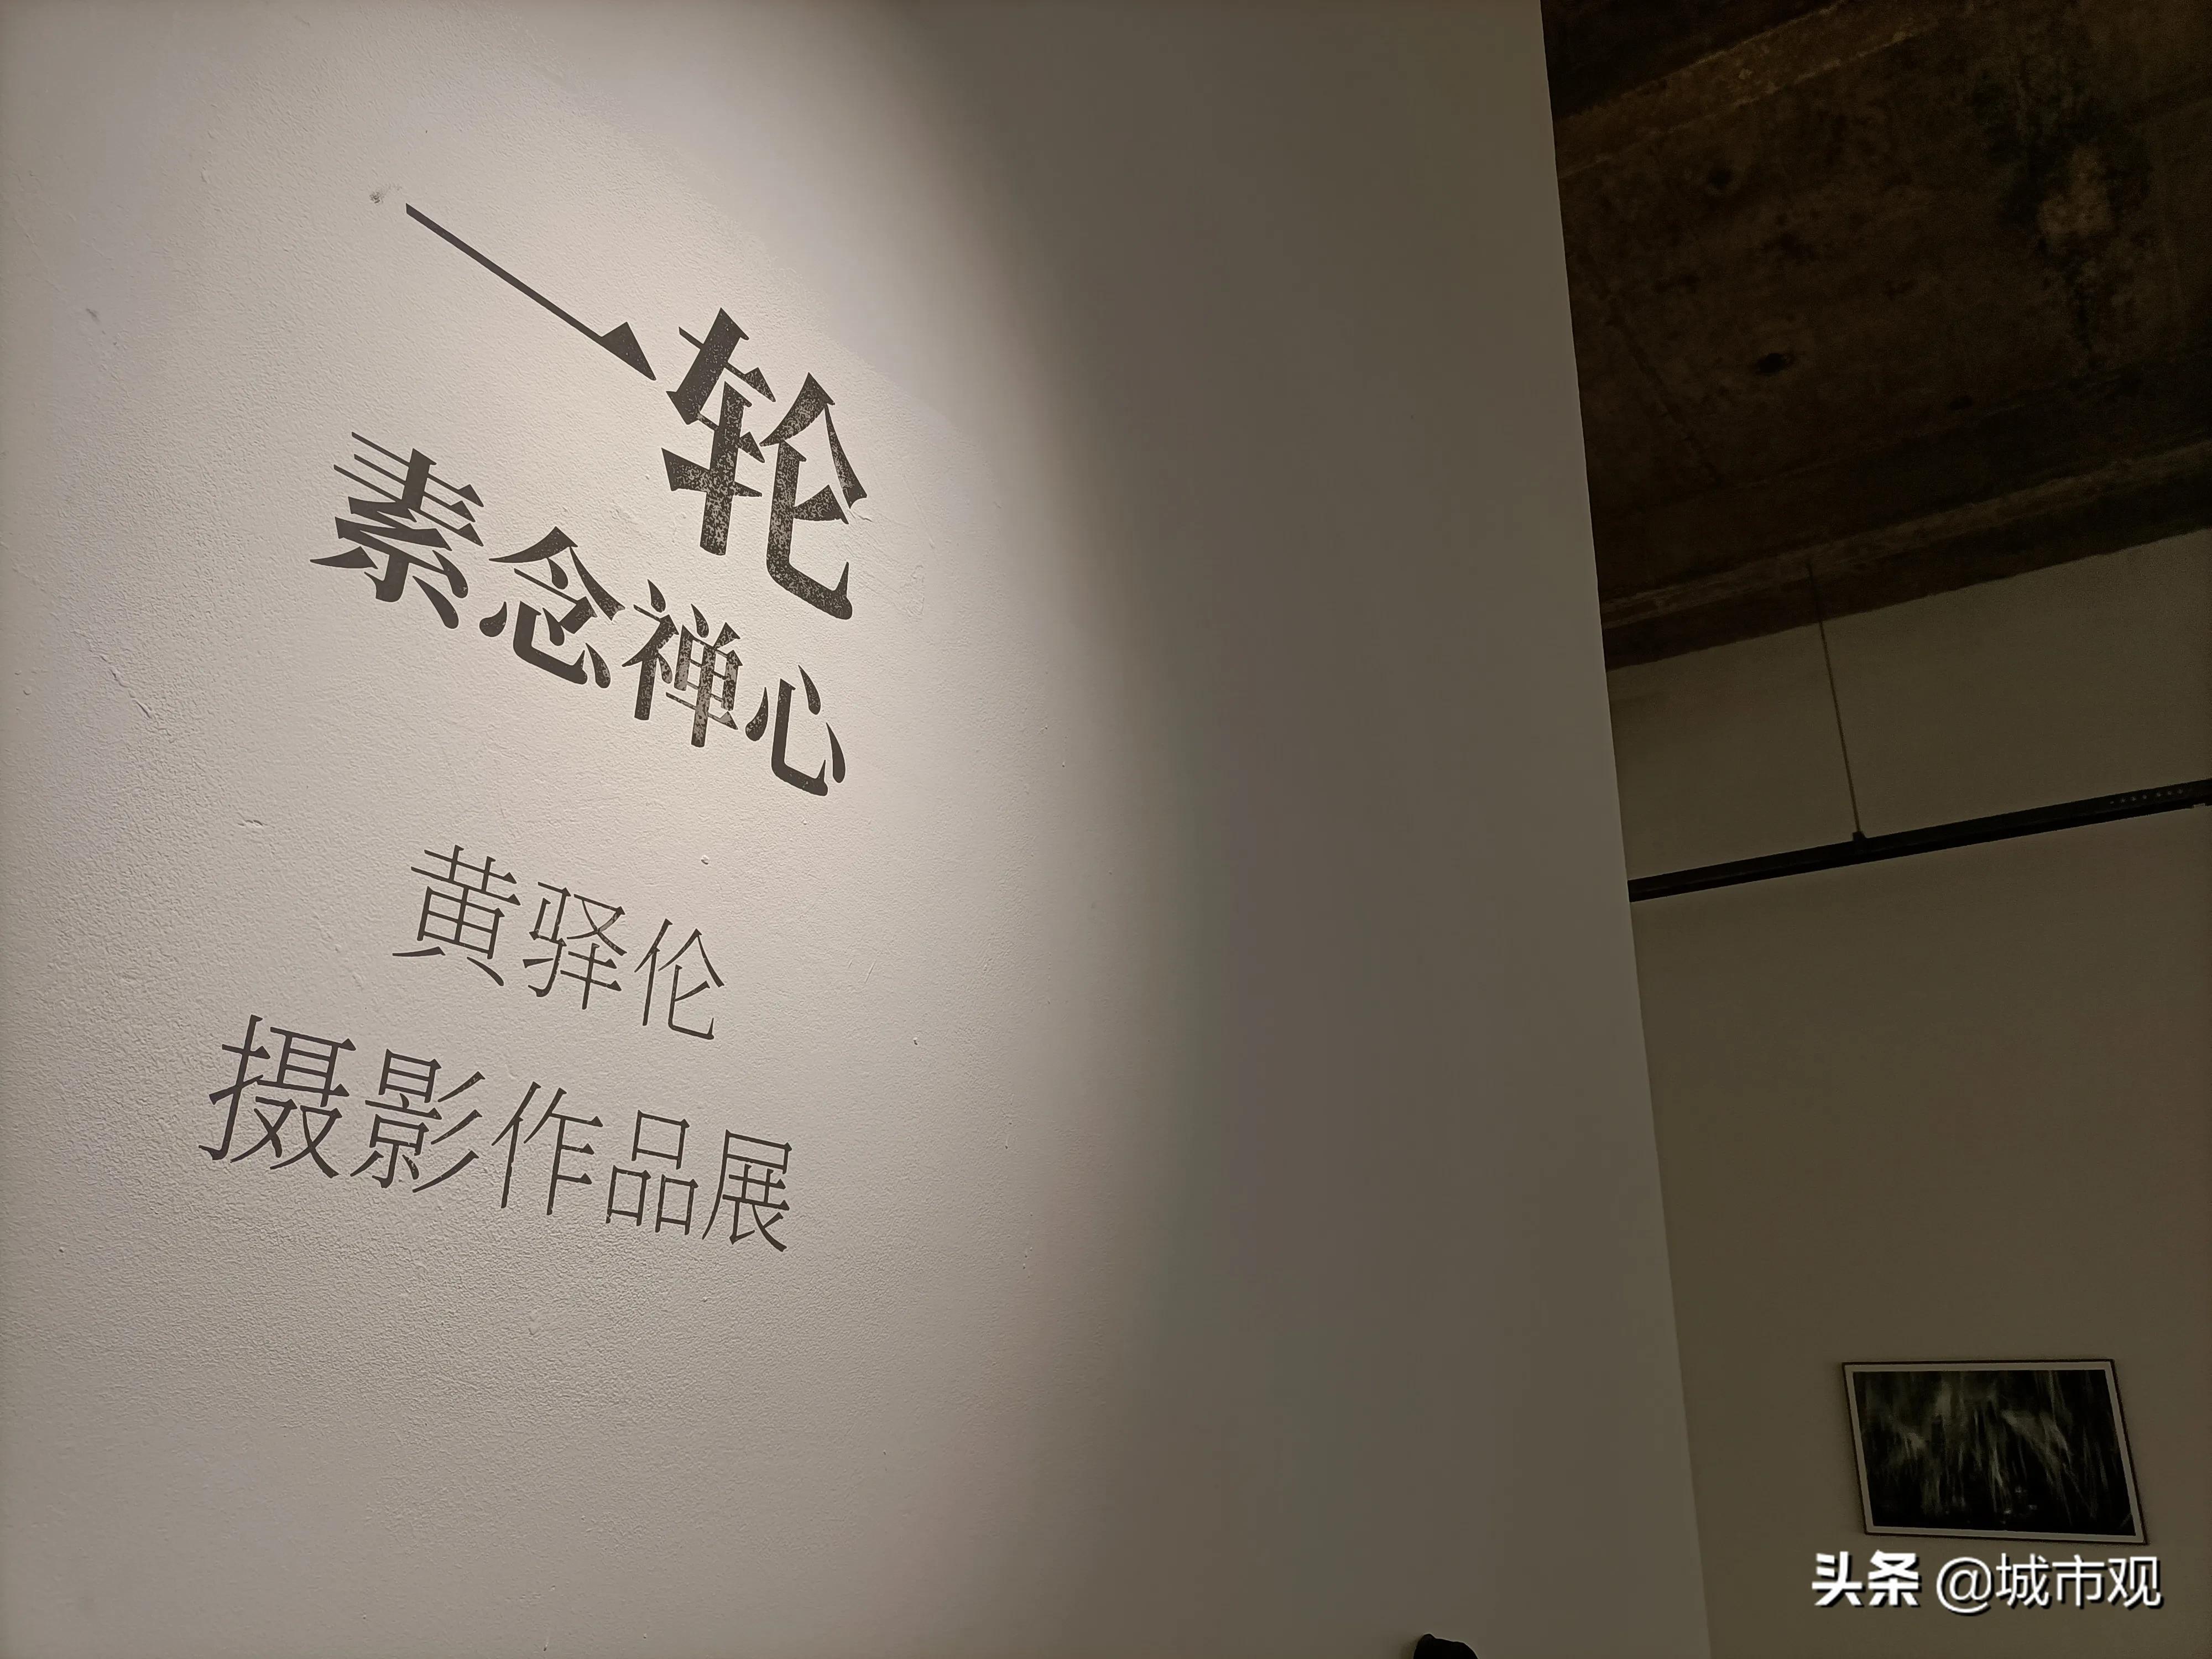 大展黔圖《一輪·素念禪心》黃驛倫攝影作品在貴州師大美術館展出